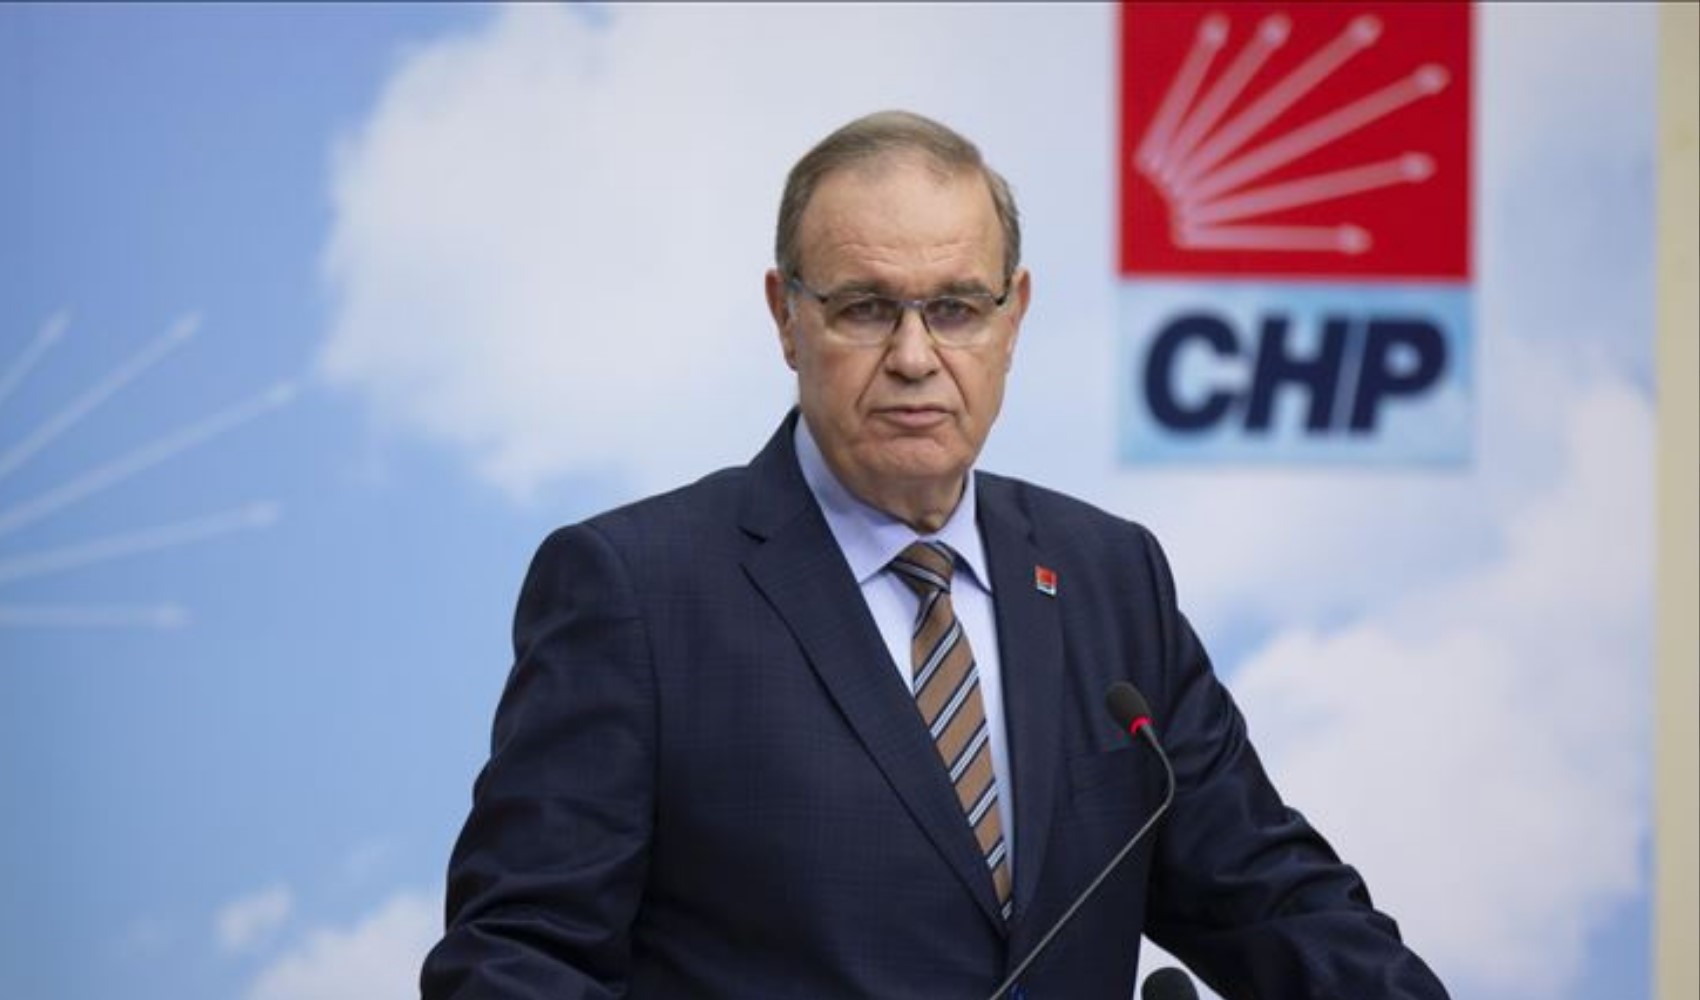 CHP Tekirdağ Milletvekili Faik Öztrak’tan enflasyon raporu yorumu:  ‘Bu pilav çok su kaldırır’